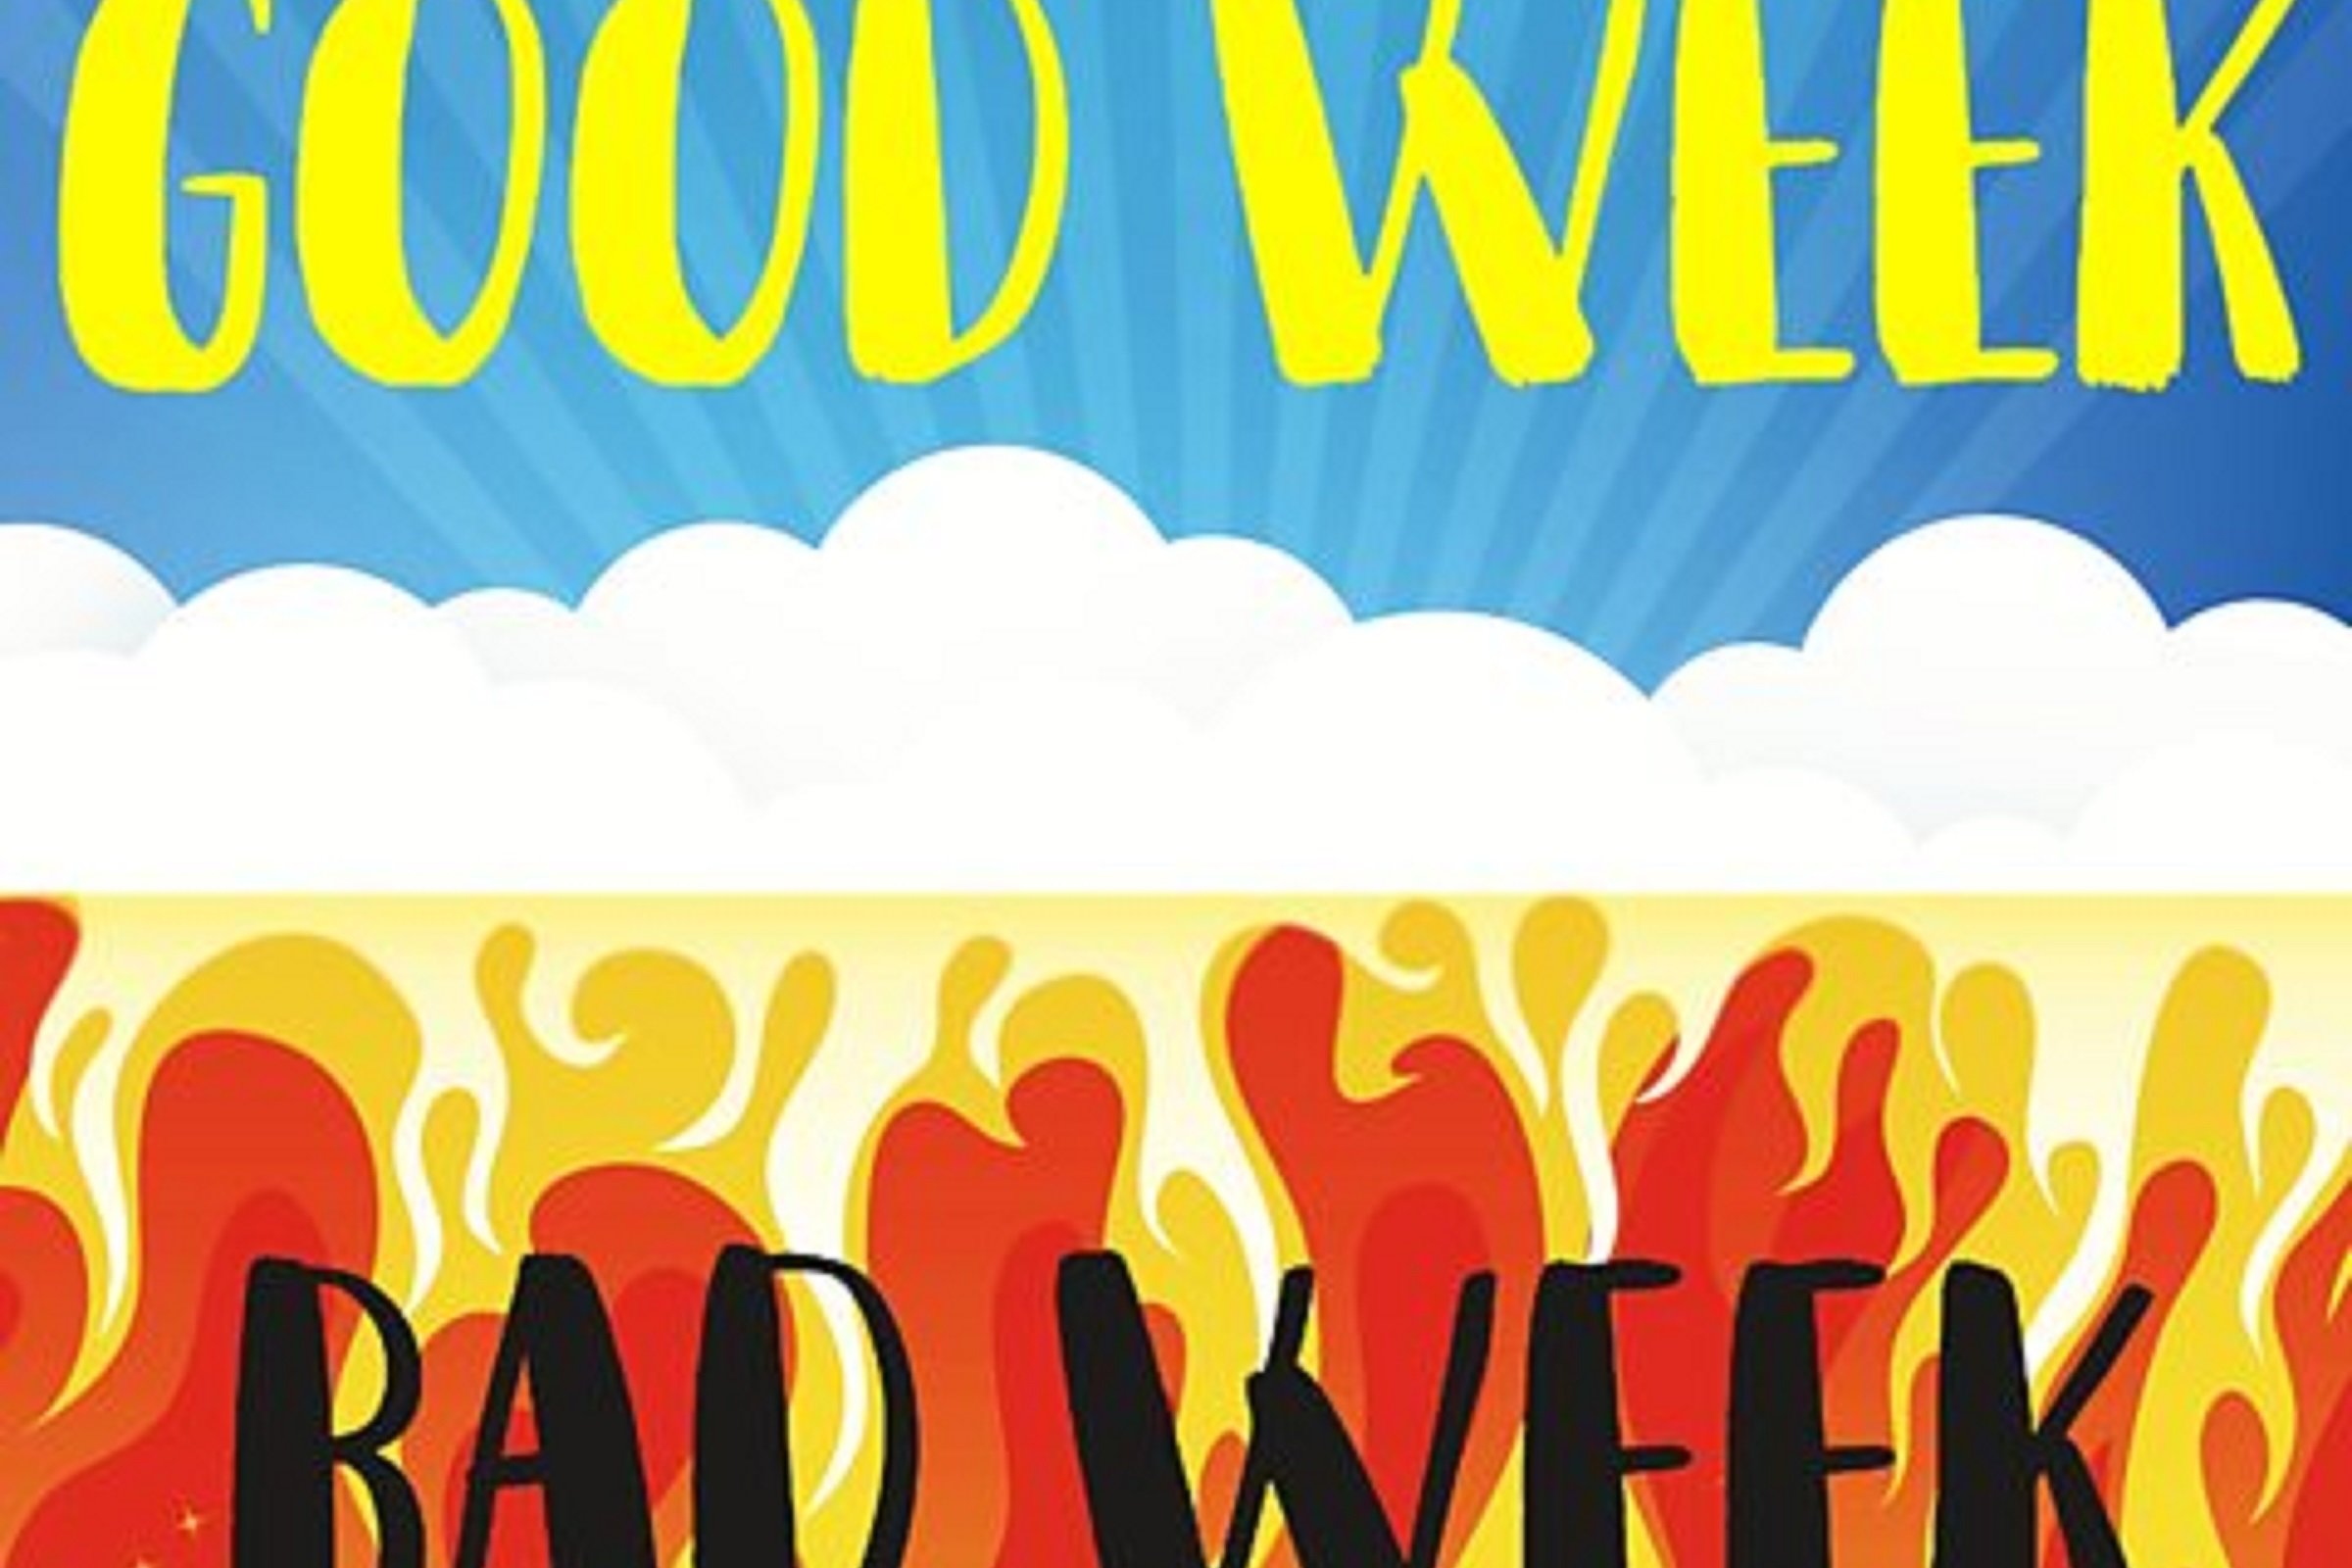 Elizabeth Oldfield appears on BBC Radio 5 Live’s Good Week / Bad Week